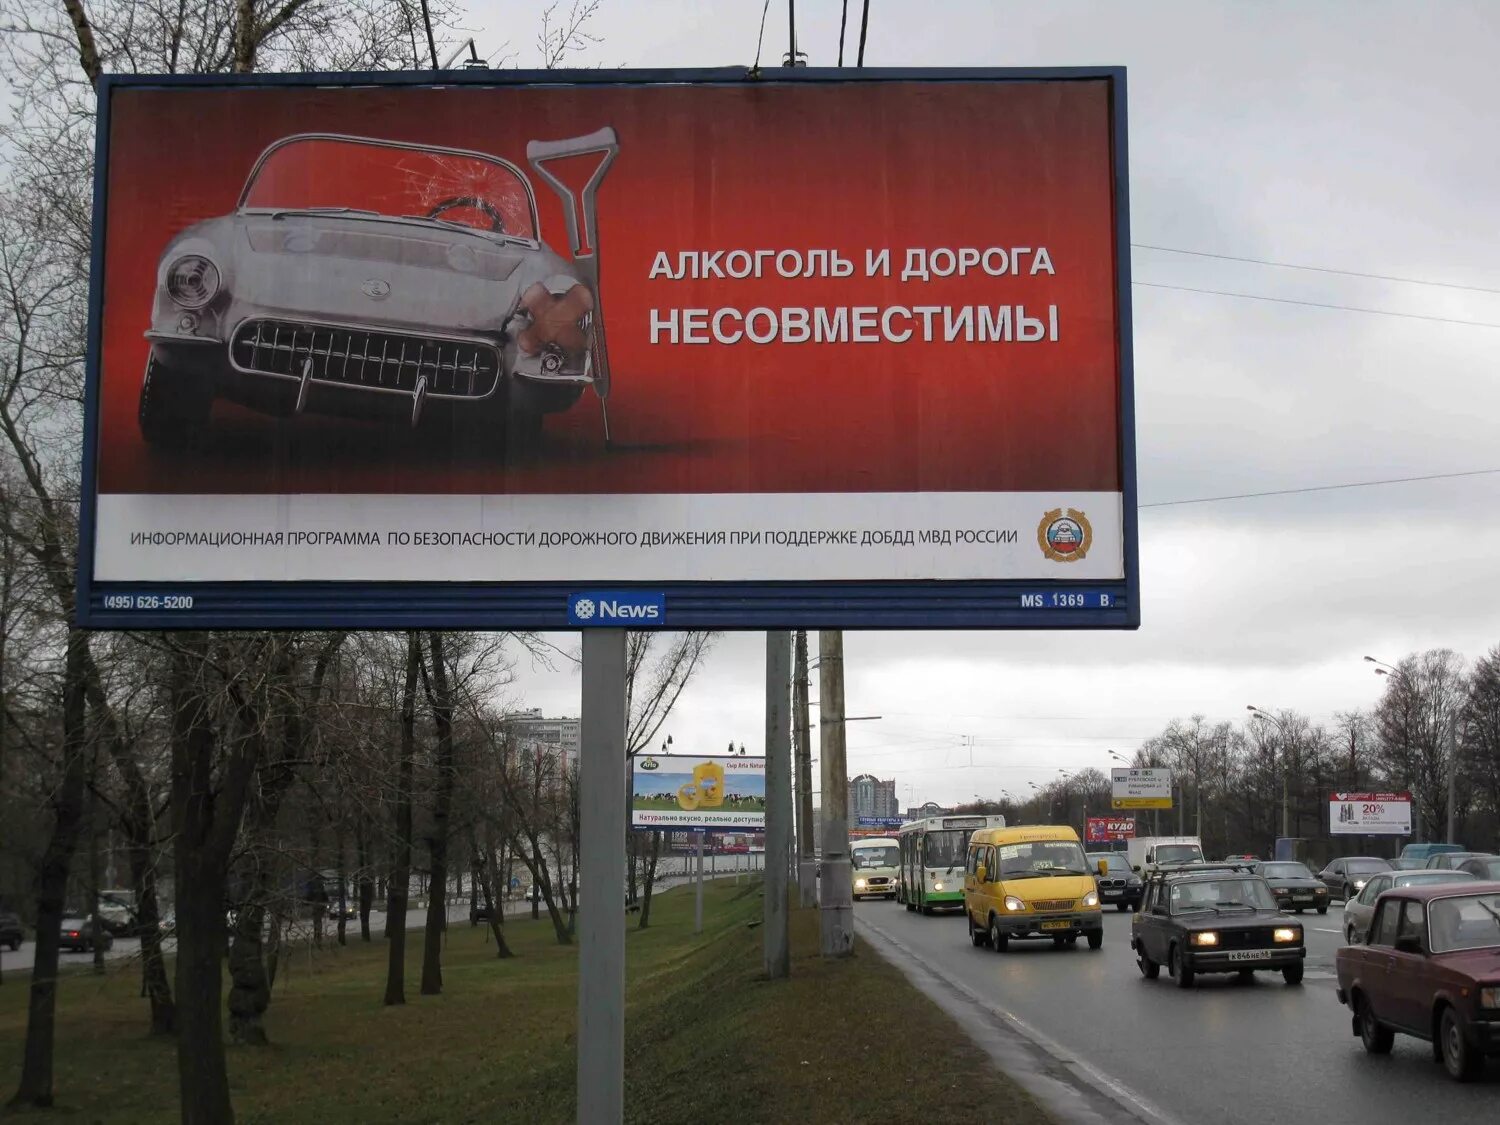 Рекламная движения. Рекламный баннер на дороге. Рекламный щит. Рекламный щит социальная реклама. Социальная реклама на дорогах.